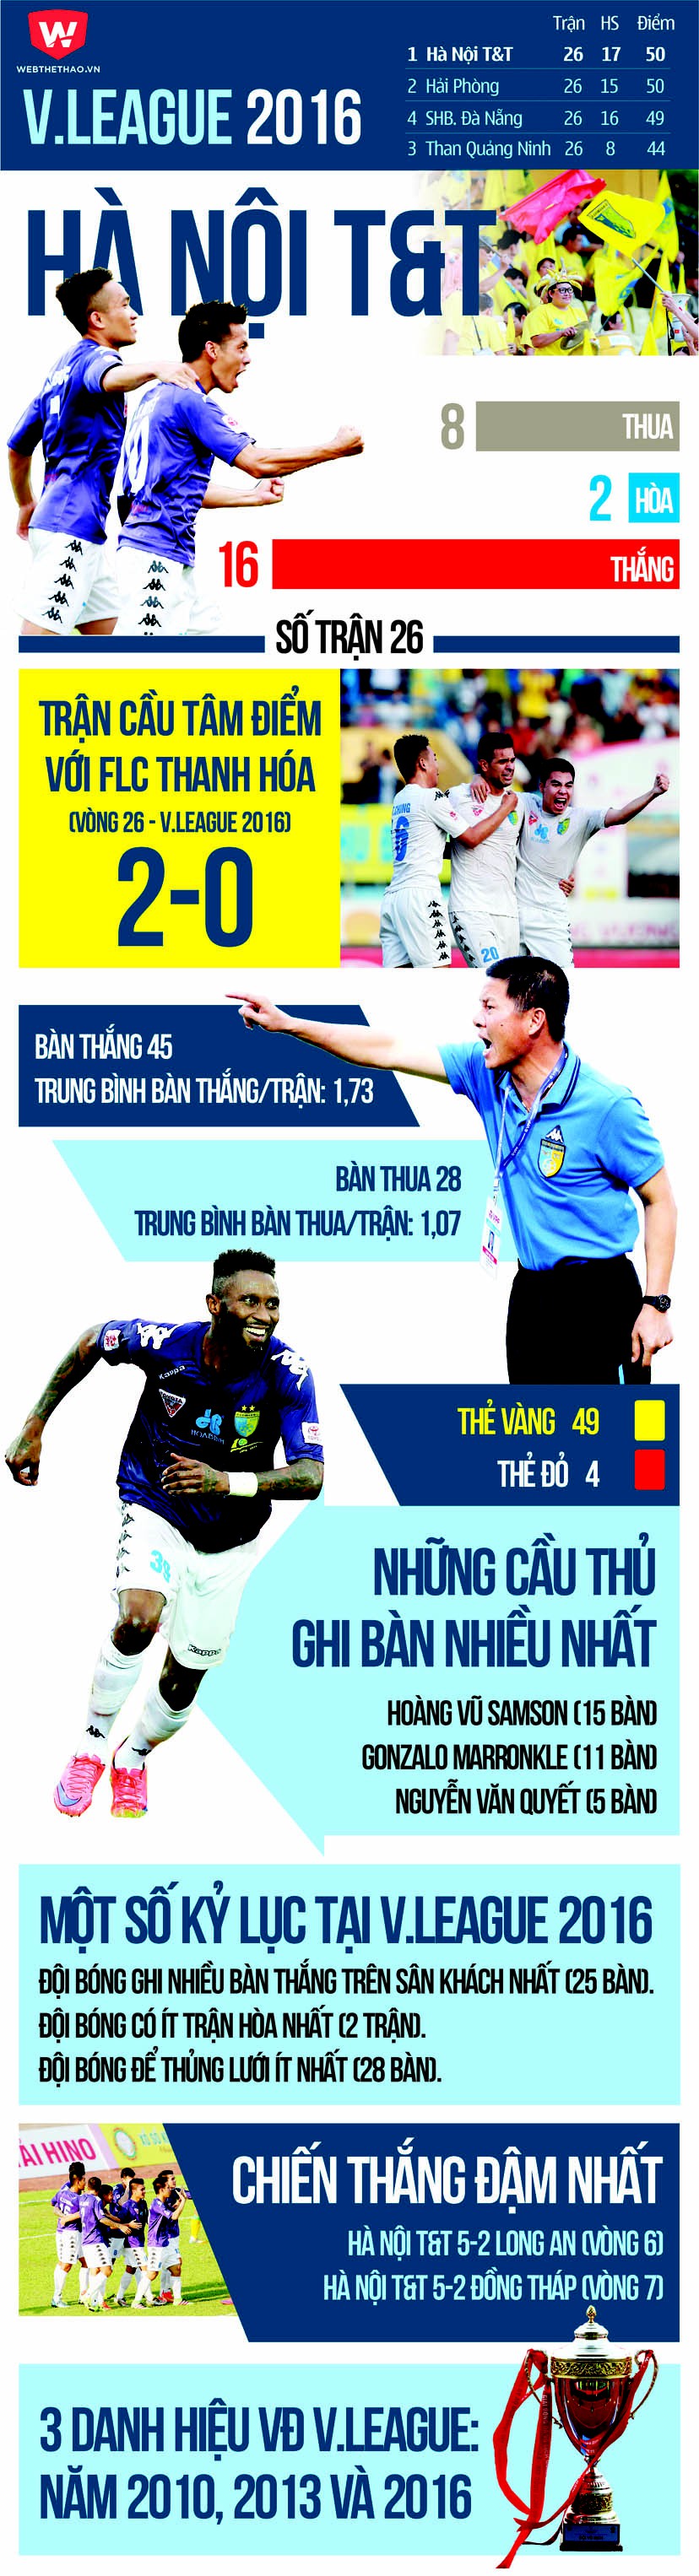 Những con số ấn tượng của nhà vô địch V.League 2016 - Hà Nội T&T